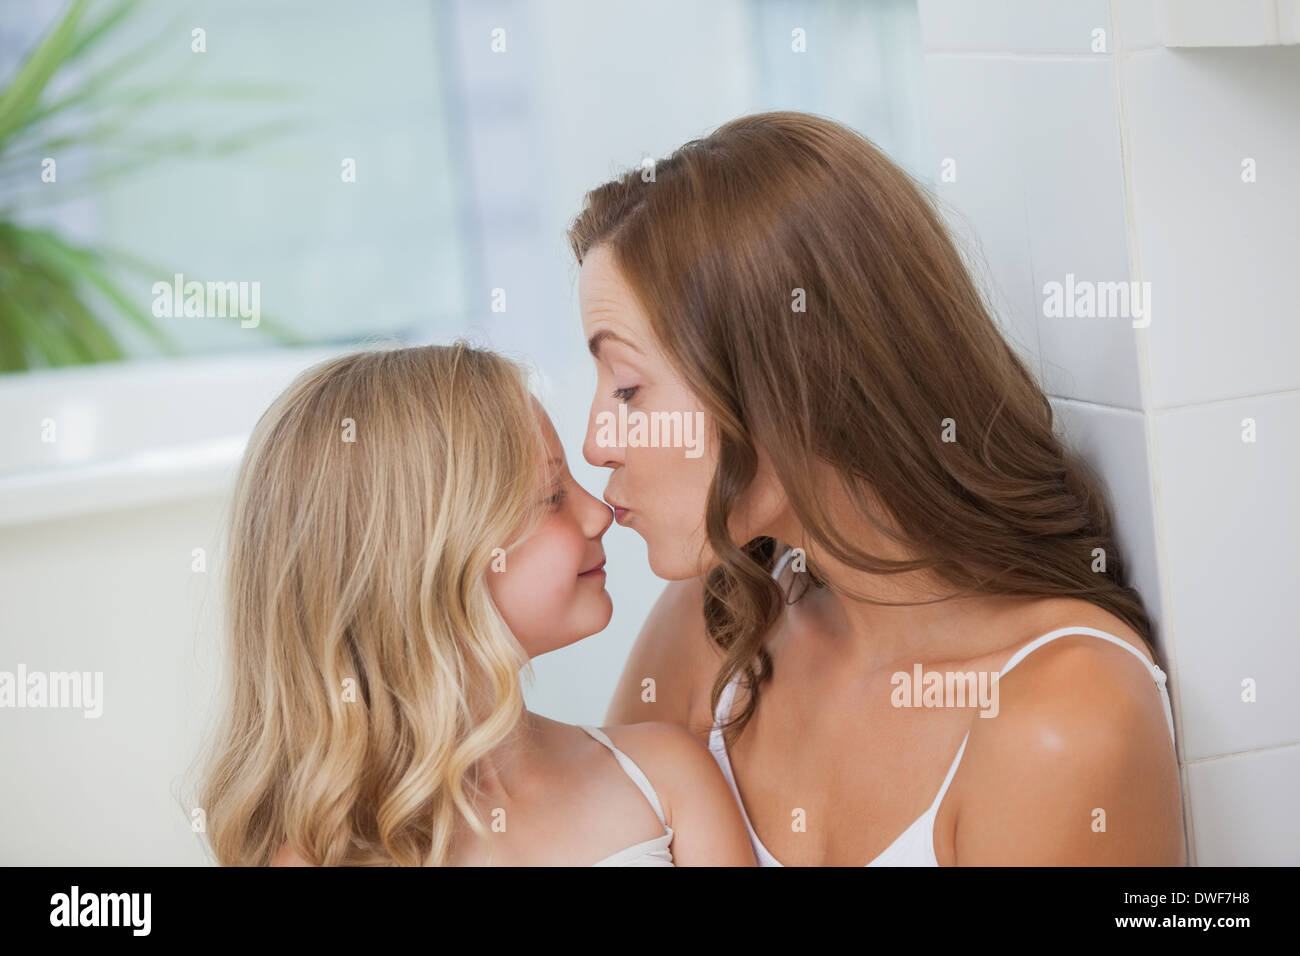 Лесбиянки мама папа. Мать целует дочь. Мама с дочкой поцелуй. Малыши лесбияночки. Мама и дочь поцелуй с языком.